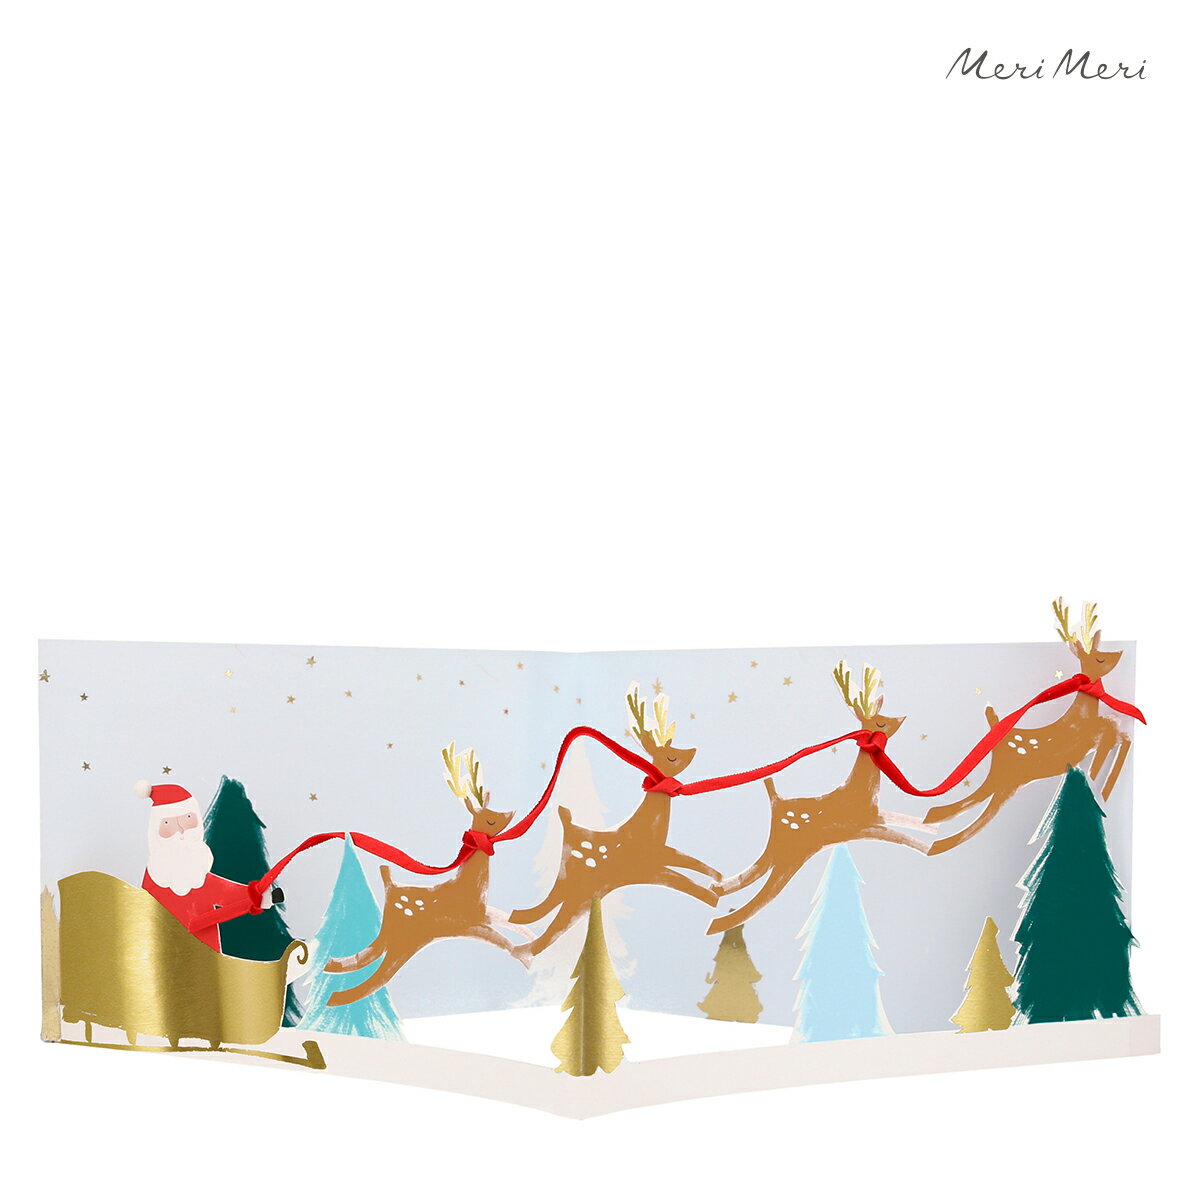 クリスマスカード（1000円程度） 【クリスマス】クリスマスカード サンタ 立体 おしゃれ かわいい グリーティングカード 輸入カード メッセージカード merimeri メリメリ Santa's Sleigh 3d Scene Card